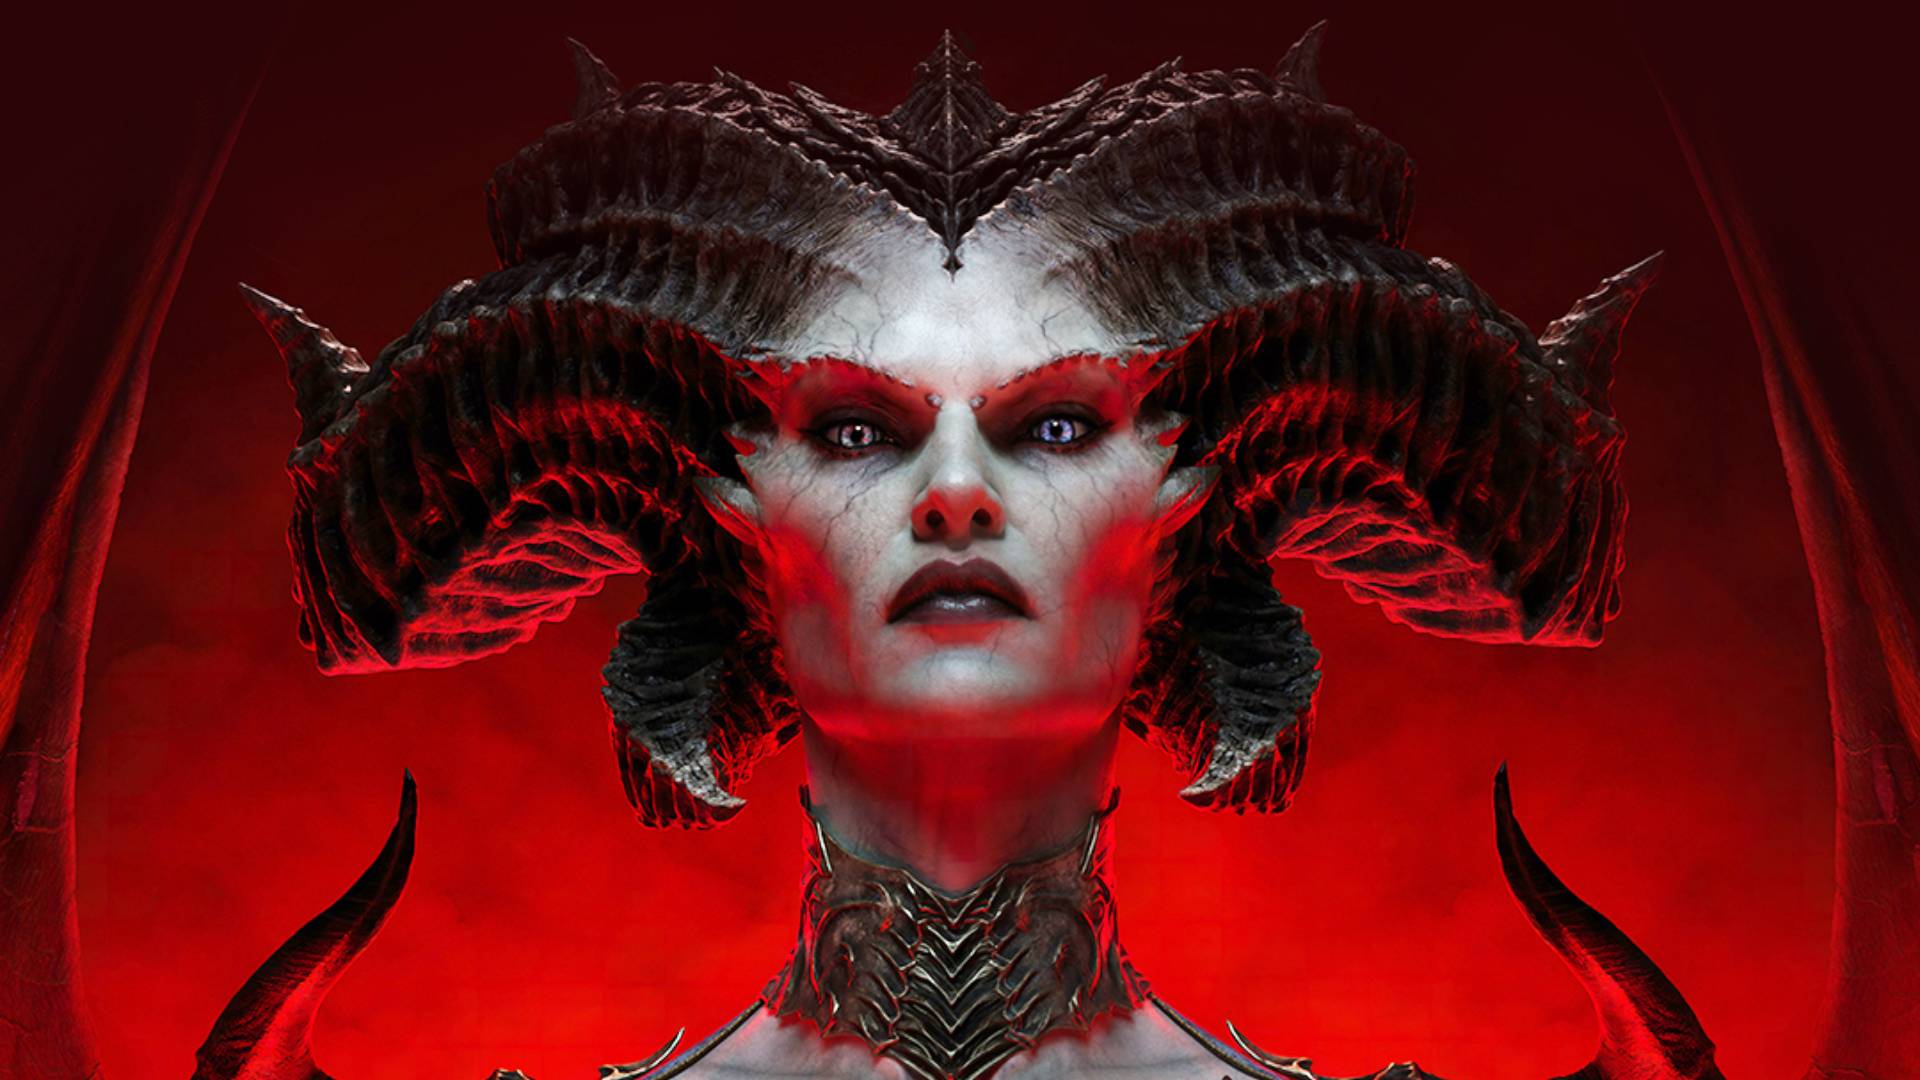 El cruce de Diablo 4 Lilith llega a Immortal: un demonio con cuernos y ojos penetrantes, Lilith del juego RPG Diablo 4